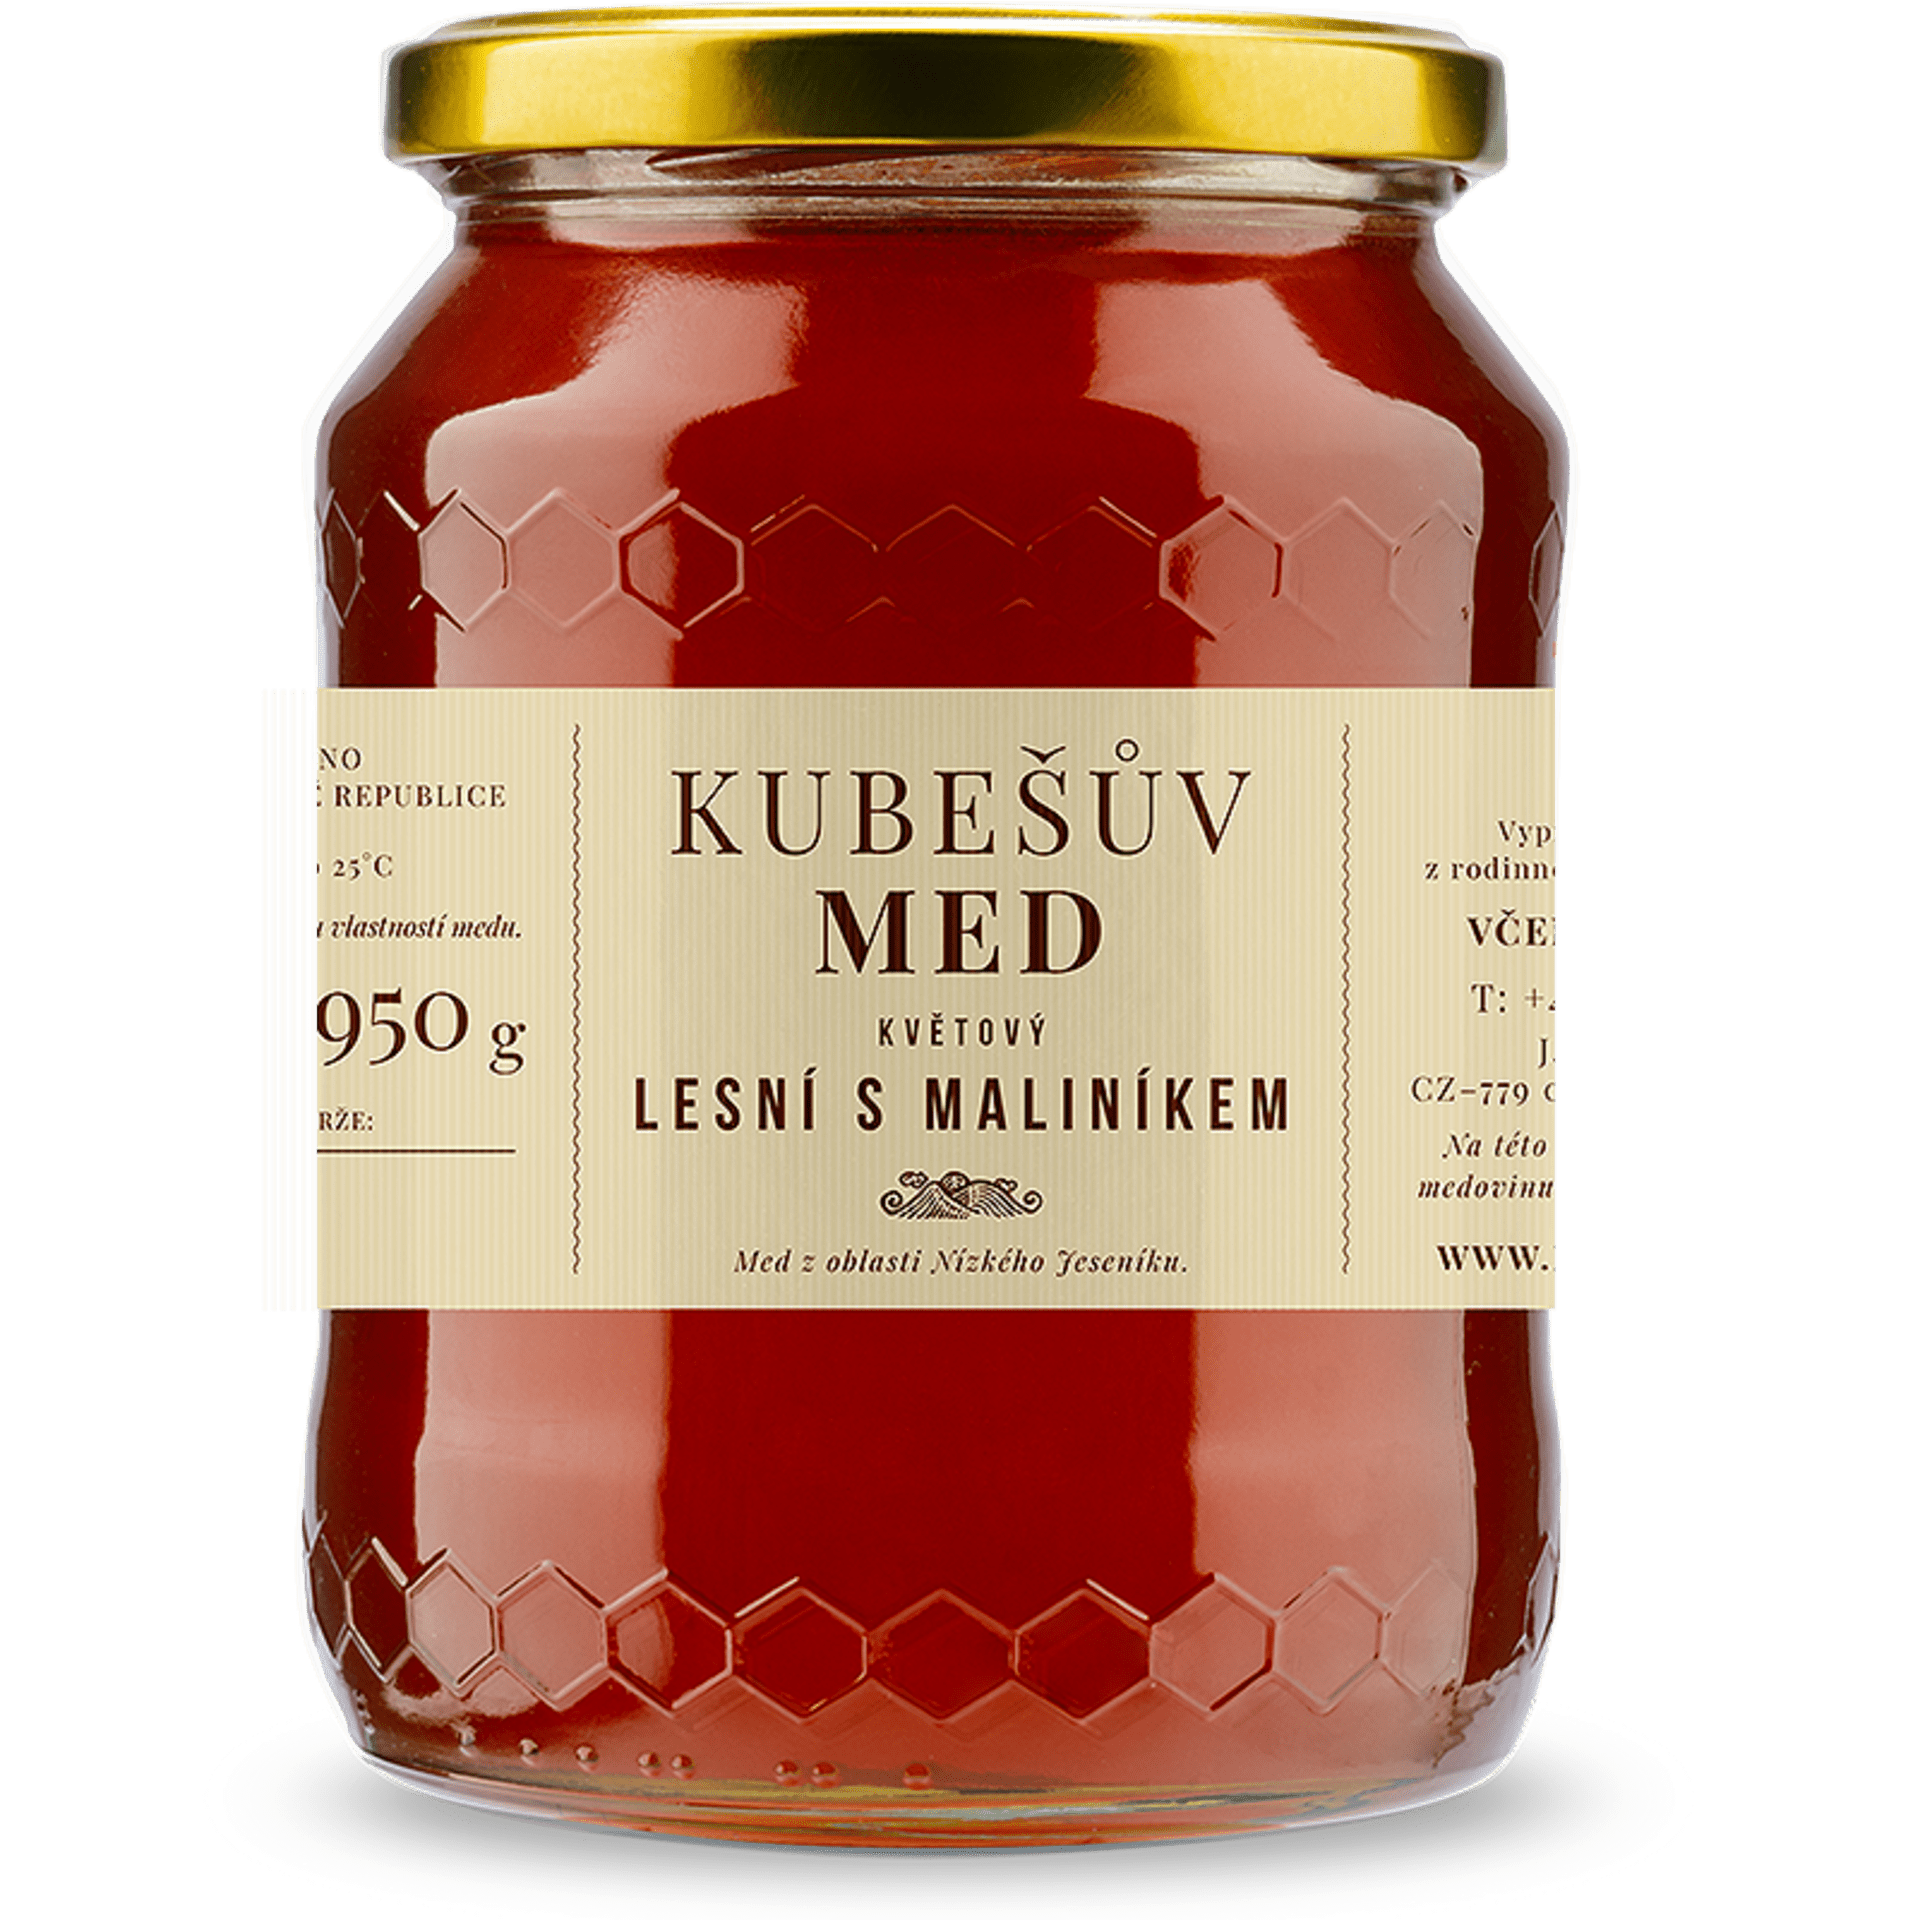 Kubešův med Med kvetový lesný s maliník 480 g